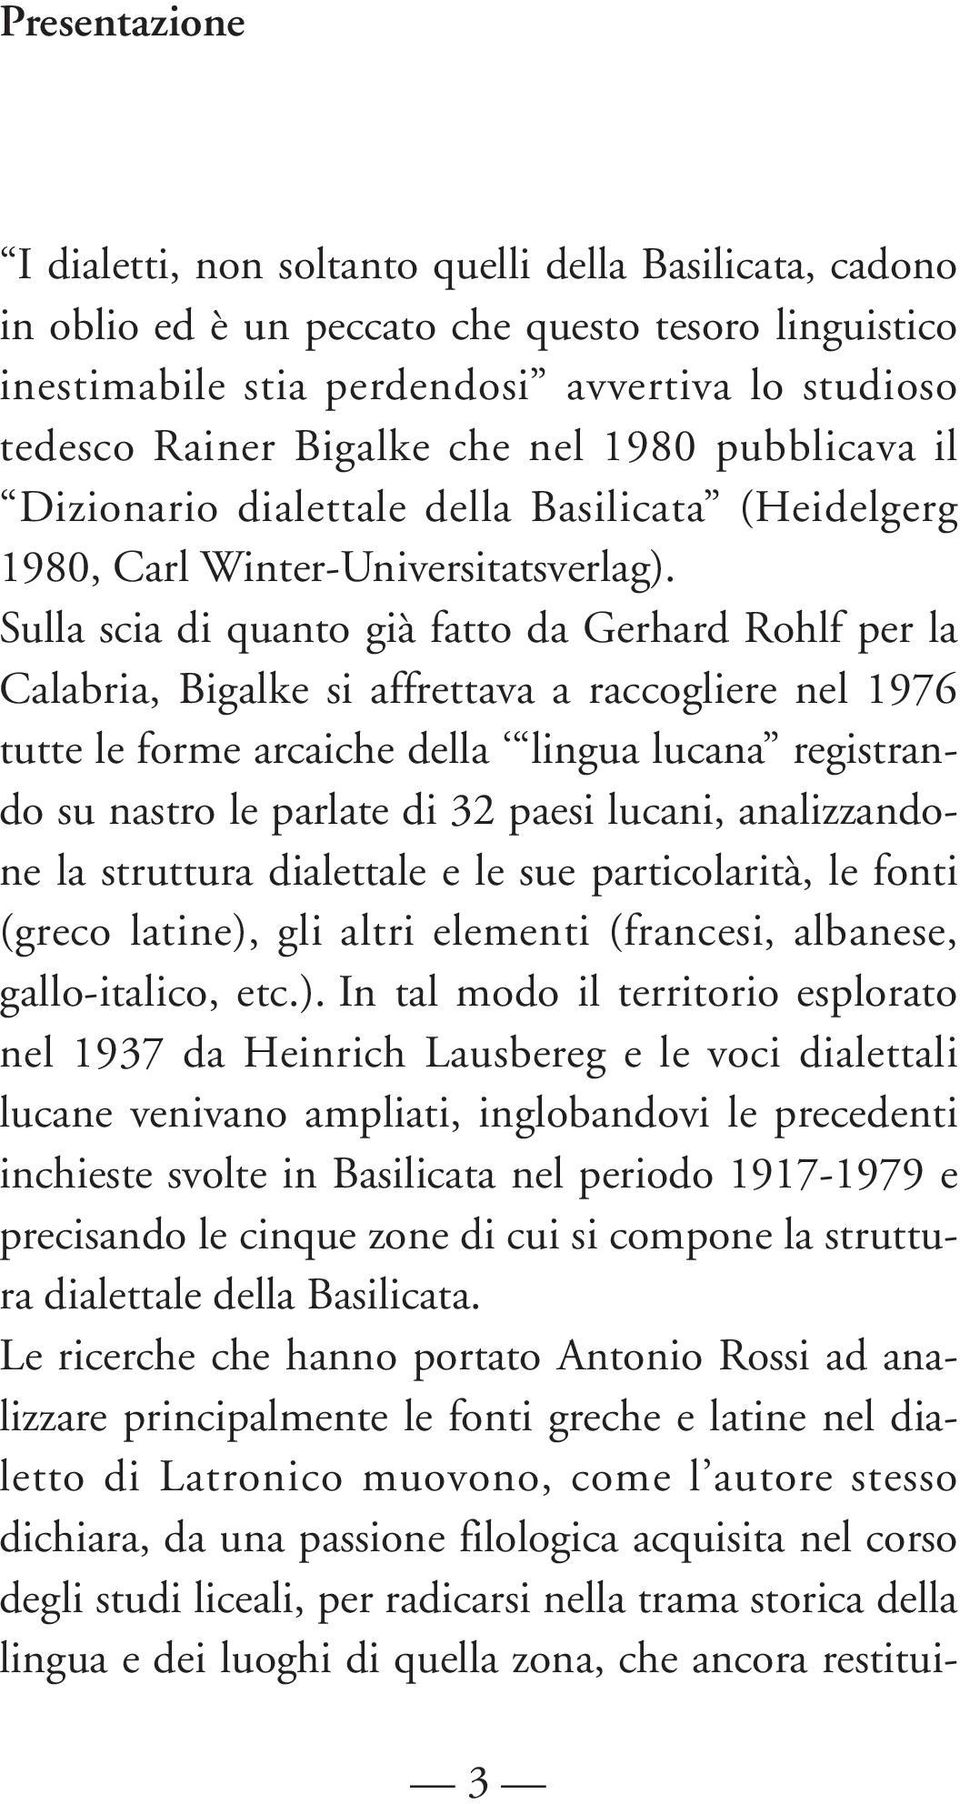 Sulla scia di quanto già fatto da Gerhard Rohlf per la Calabria, Bigalke si affrettava a raccogliere nel 1976 tutte le forme arcaiche della lingua lucana registrando su nastro le parlate di 32 paesi